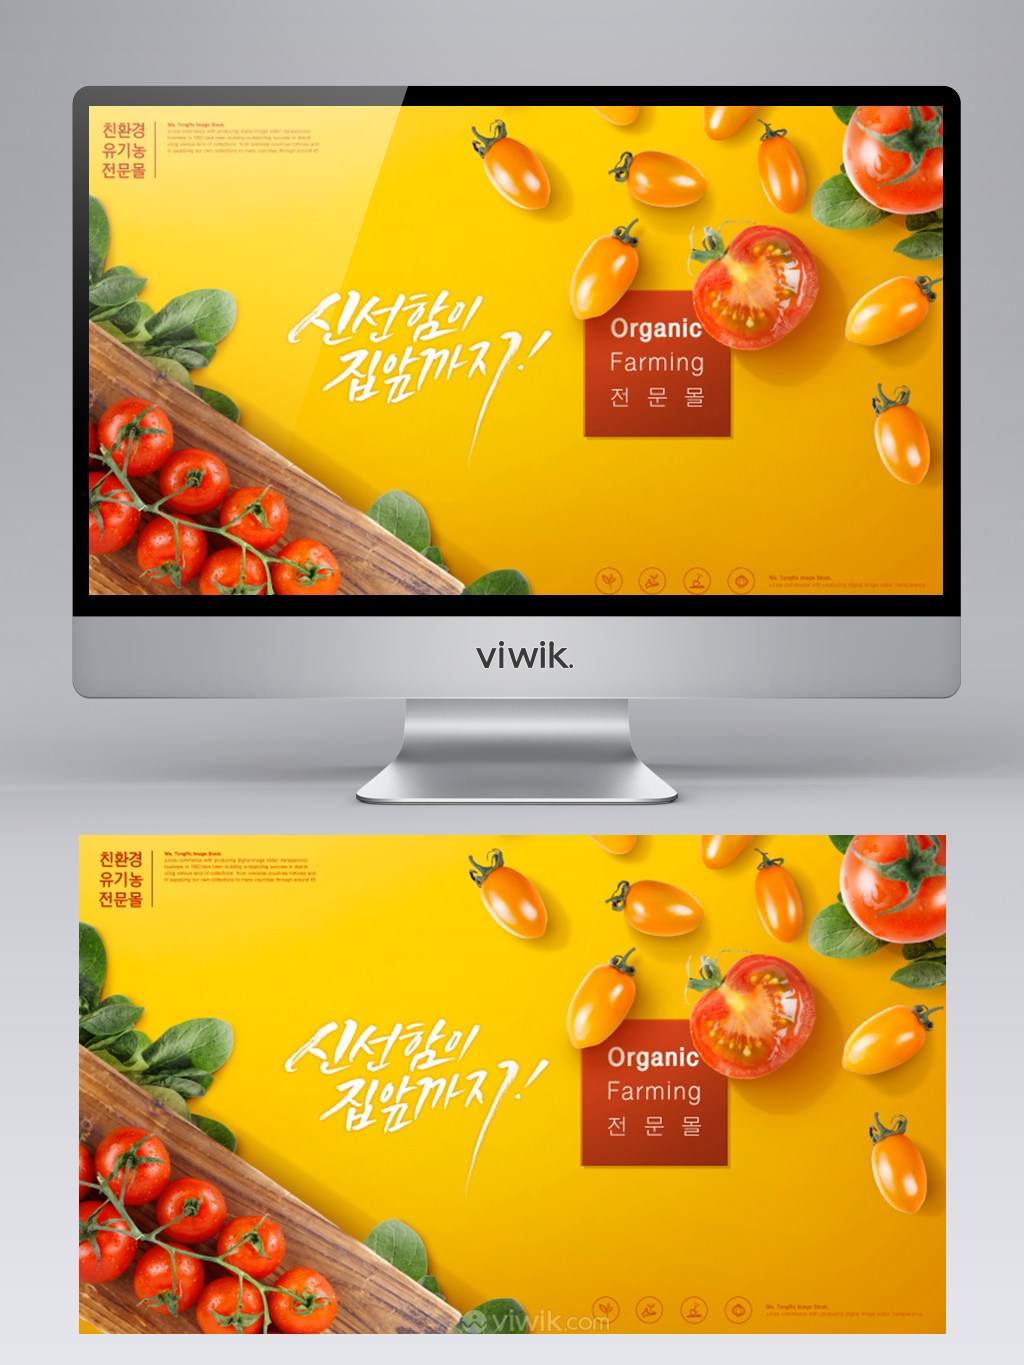 新鲜有机蔬菜美食黄色背景banner设计